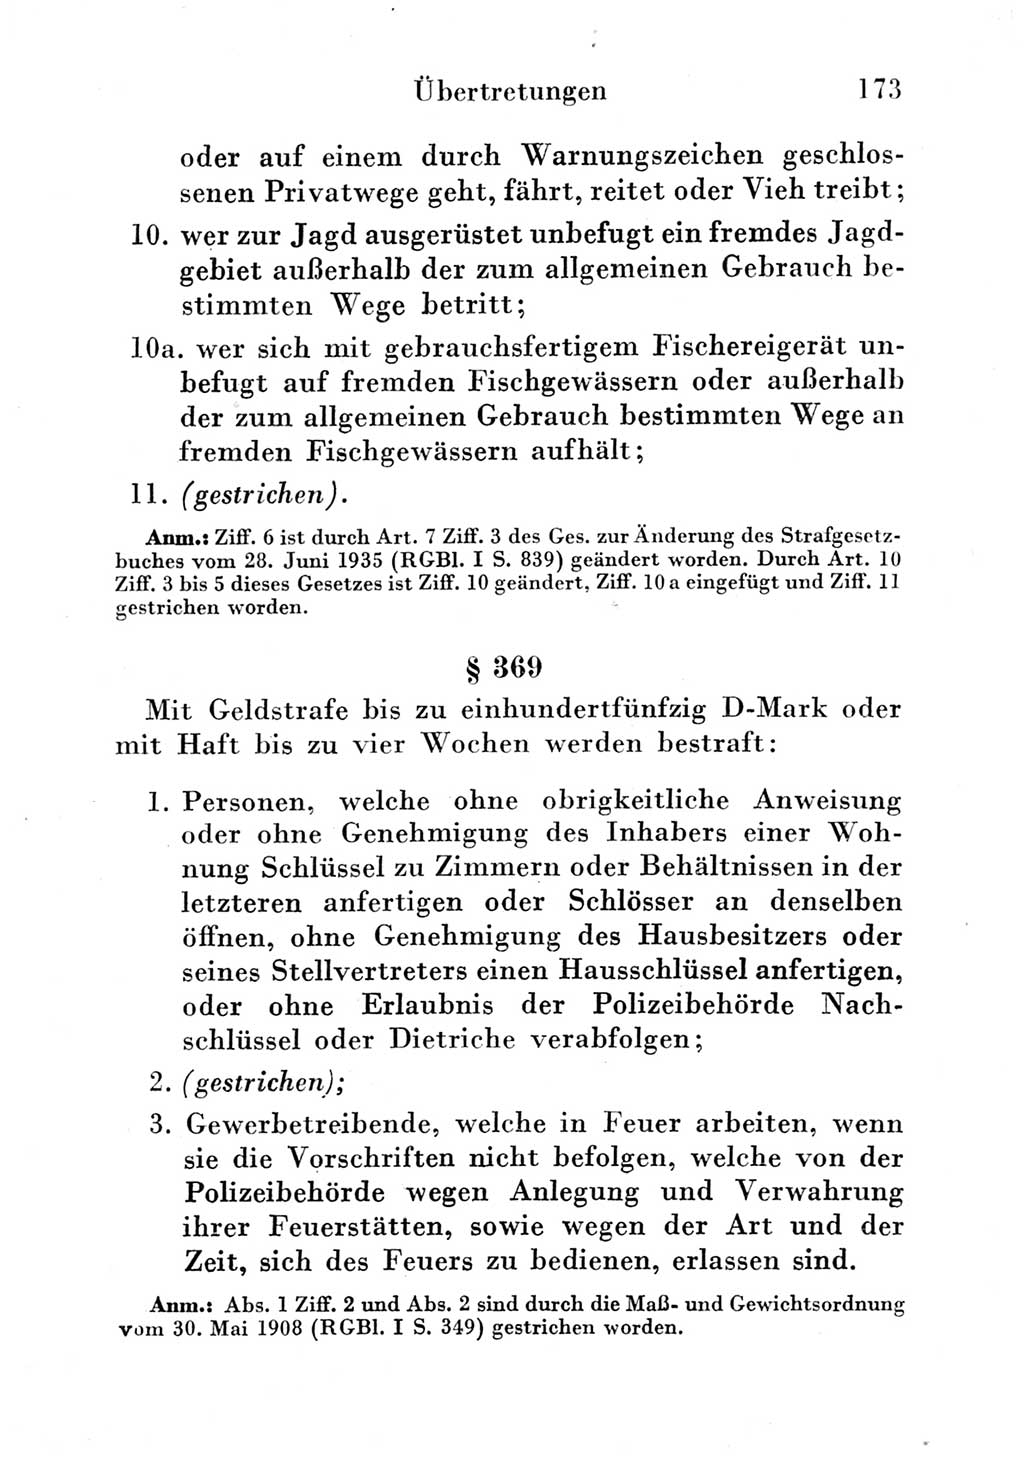 Strafgesetzbuch (StGB) und andere Strafgesetze [Deutsche Demokratische Republik (DDR)] 1951, Seite 173 (StGB Strafges. DDR 1951, S. 173)